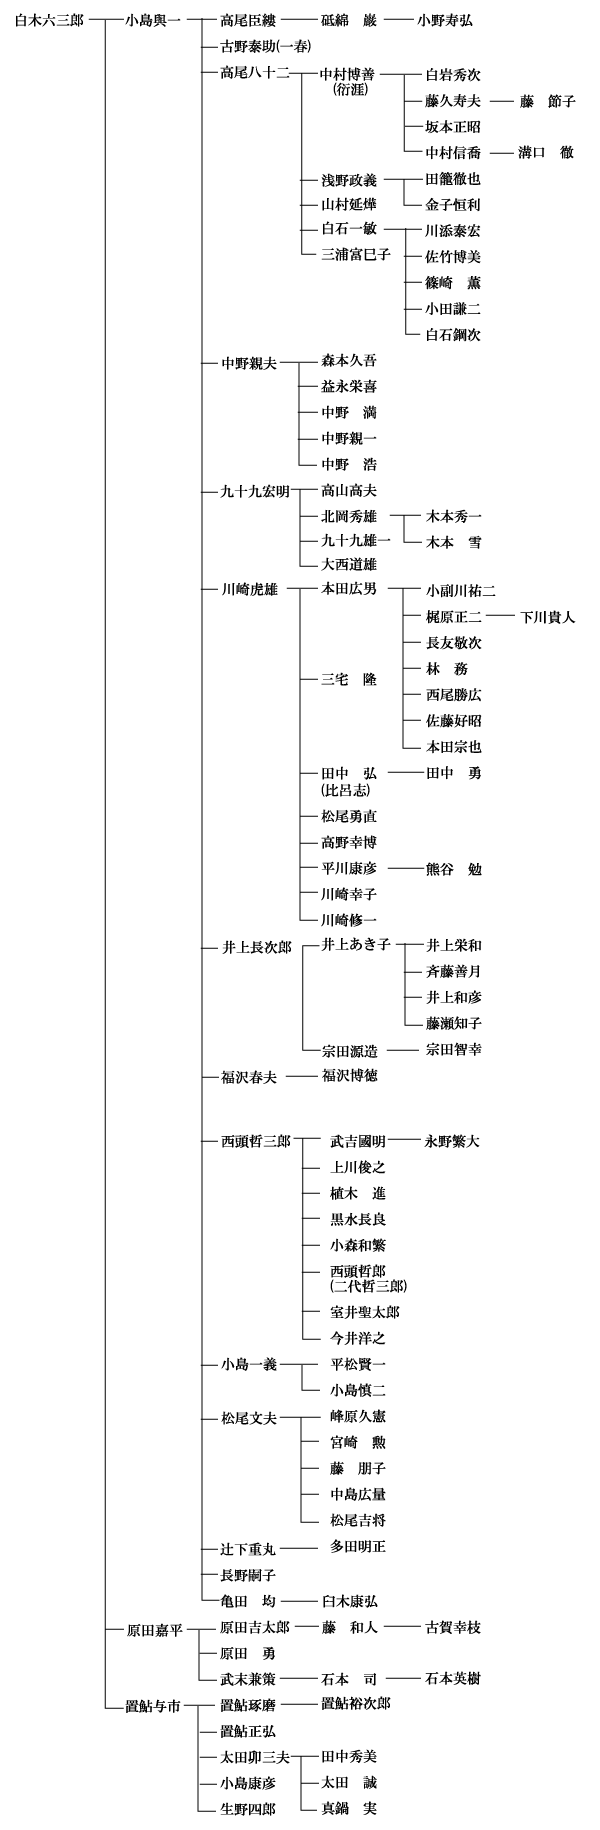 白水六三郎 系譜図